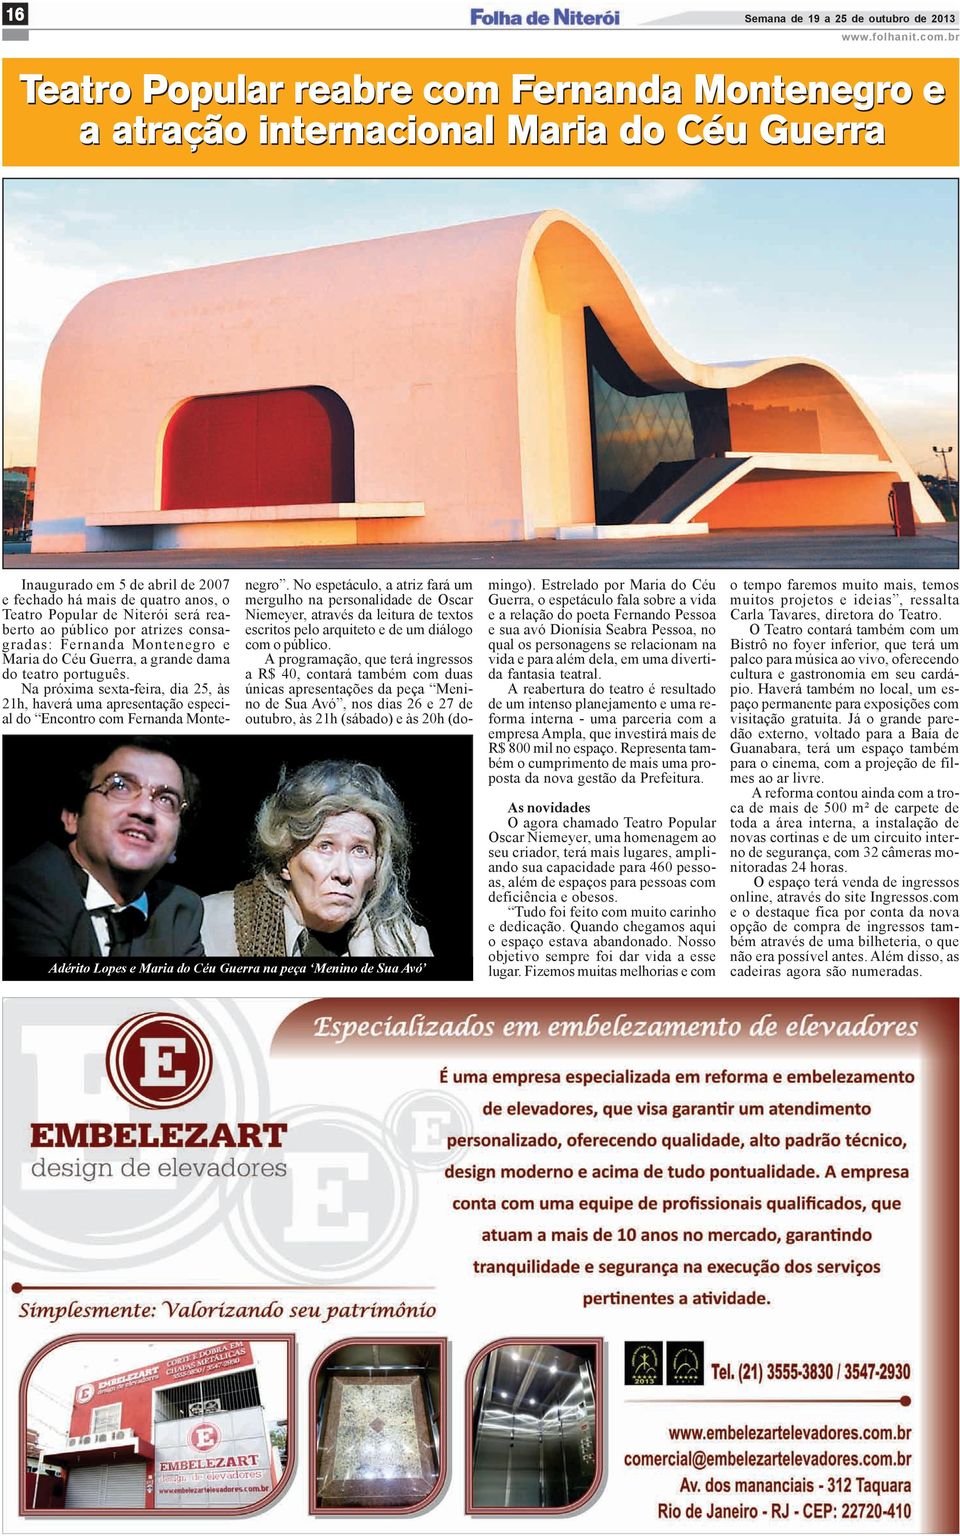 há mais de quatro anos, o Teatro Popular de Niterói será reaberto ao público por atrizes consagradas: Fernanda Montenegro e Maria do Céu Guerra, a grande dama do teatro português.